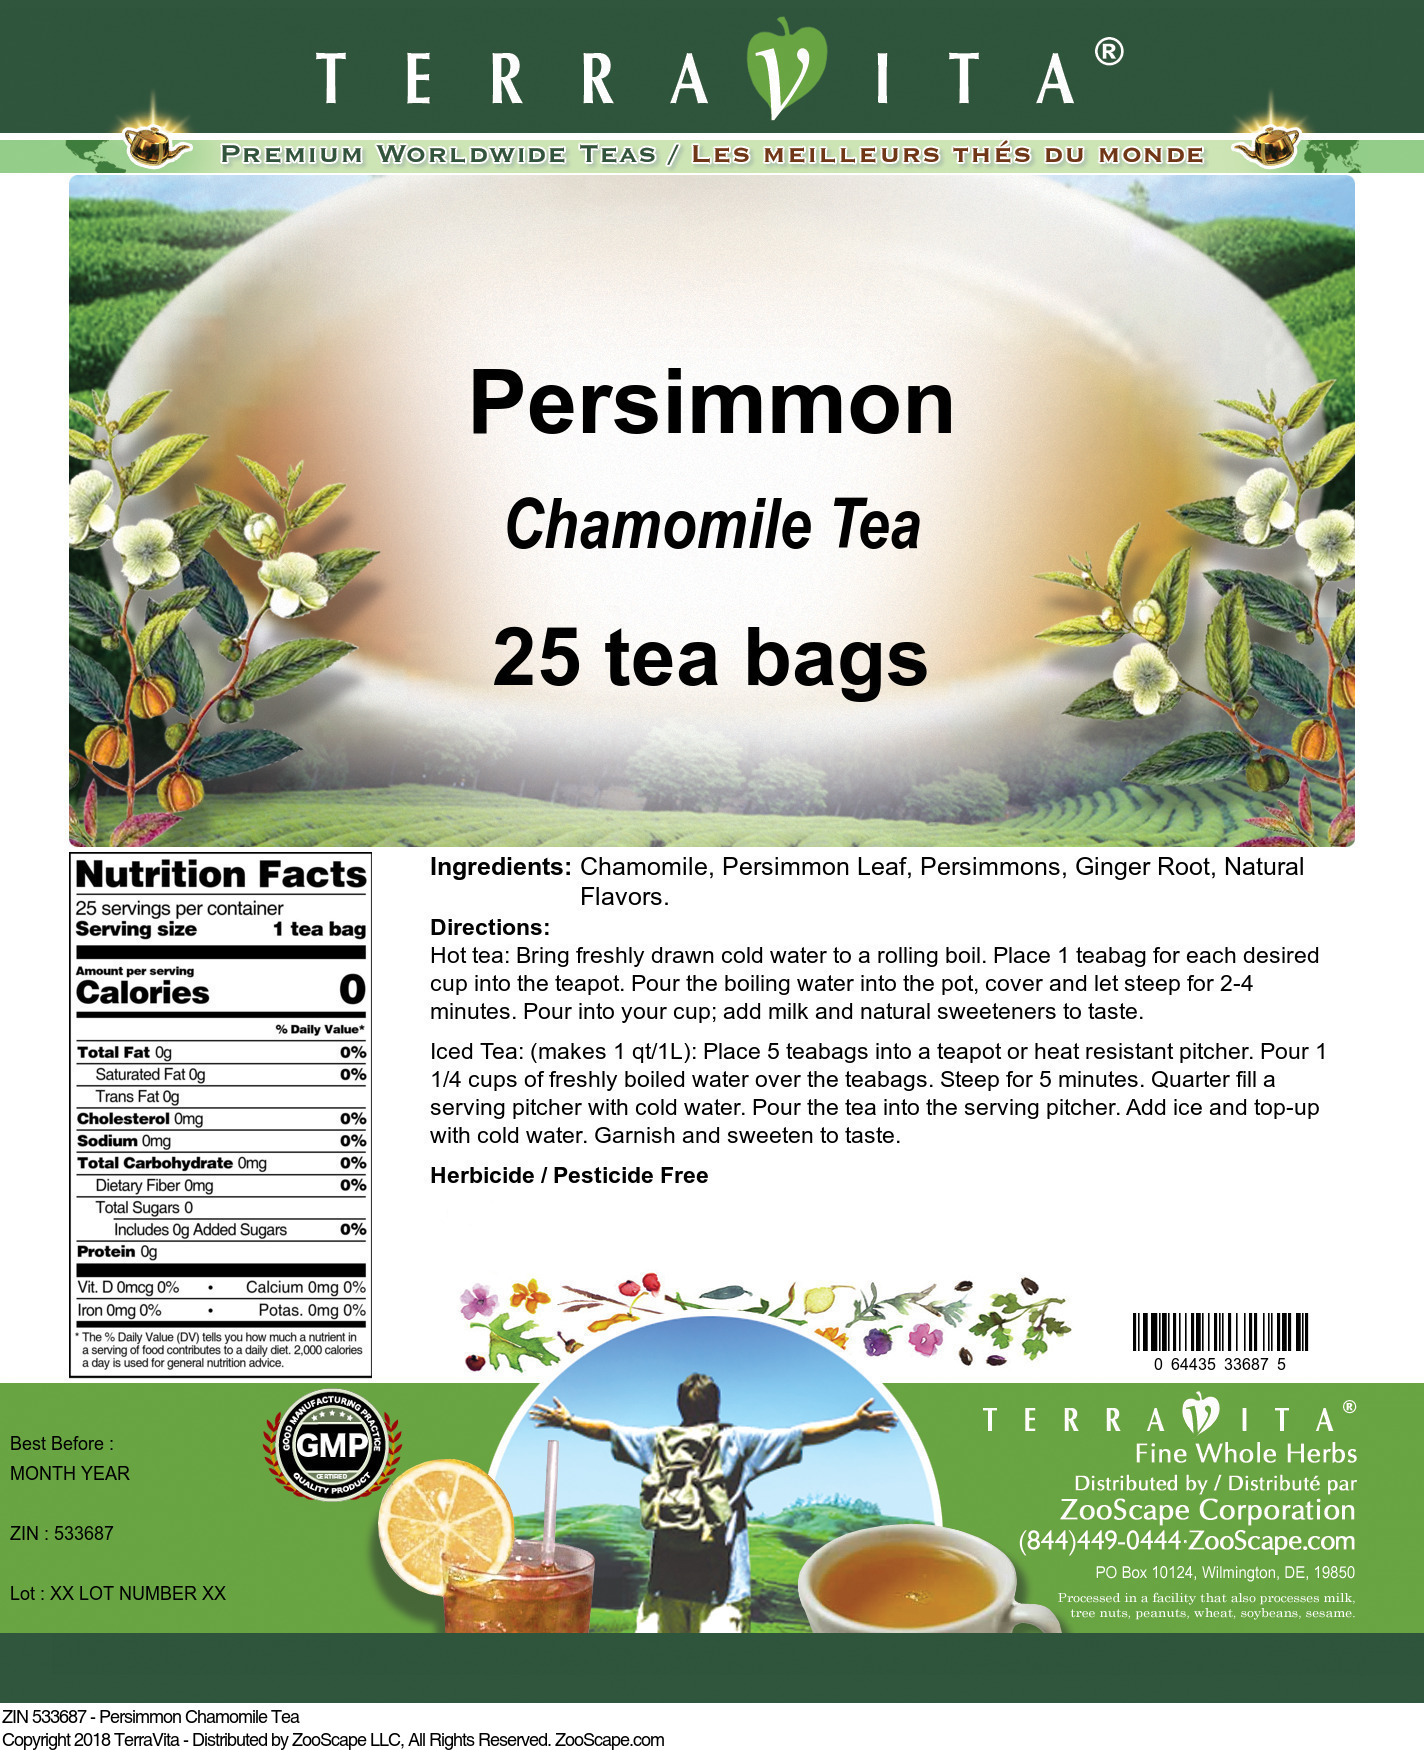 Persimmon Chamomile Tea - Label